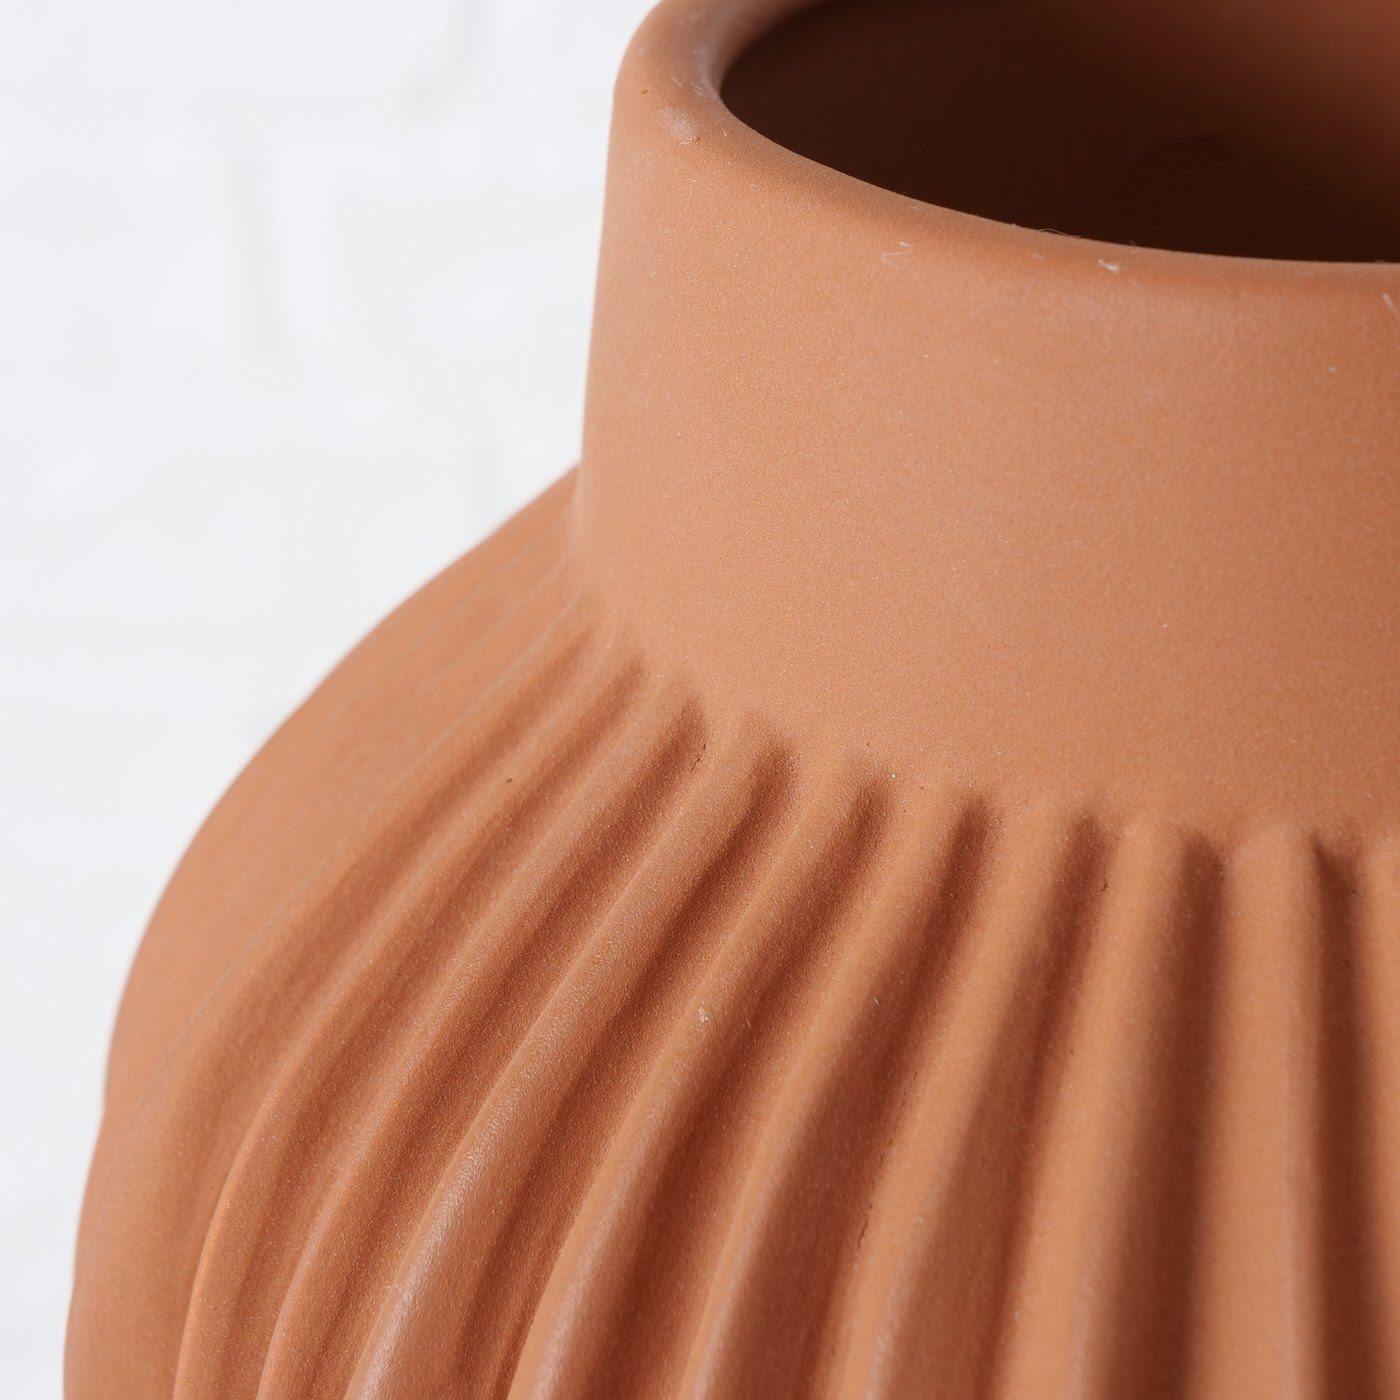 in "Altena" BOLTZE 2er Vase orange, Dekovase Keramik Set aus (Dolomit)